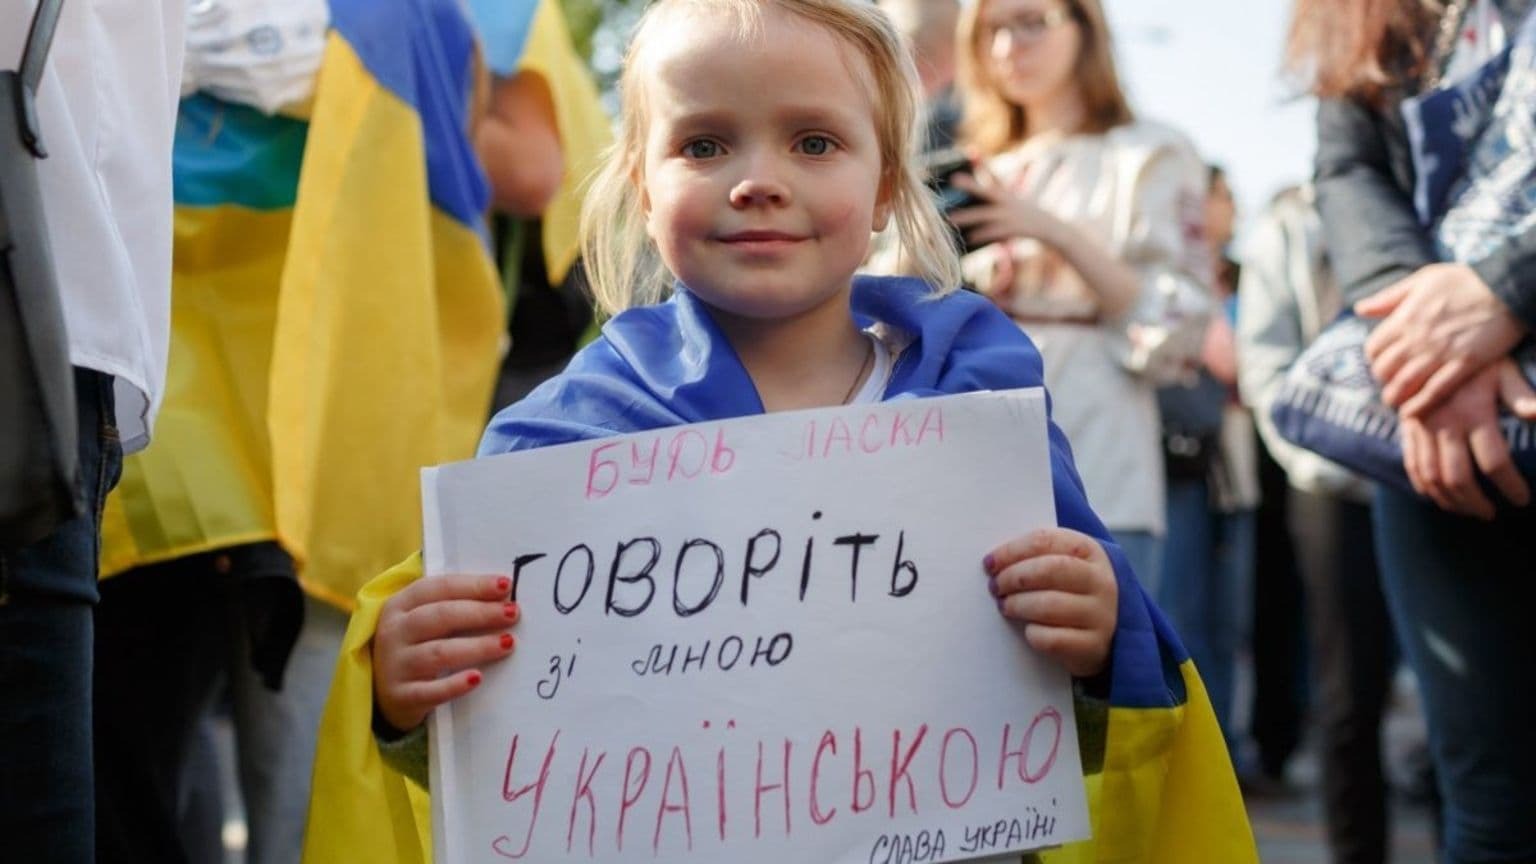 С 16 января сфера услуг должна перейти на украинский язык